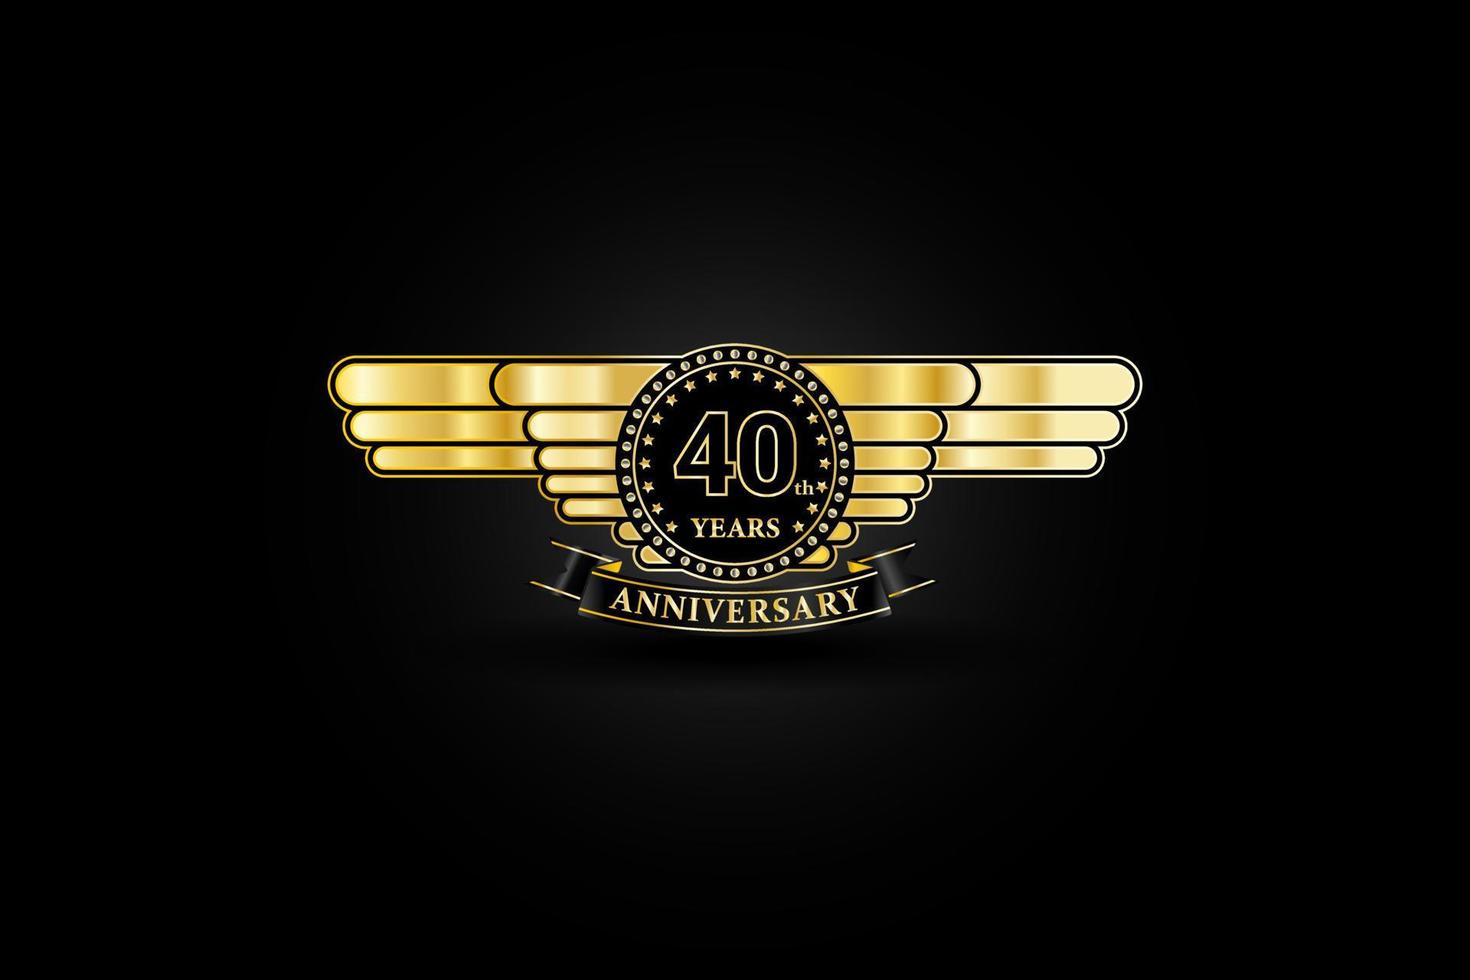 Logo kỷ niệm 40 năm mạ vàng với cánh và ruy băng sẽ là món quà ý nghĩa dành tặng cho người thân và bạn bè nhân kỉ niệm đặc biệt này. Với những chi tiết thiết kế tinh tế, logo này sẽ tạo nên ấn tượng khó phai trong lòng mọi người. 